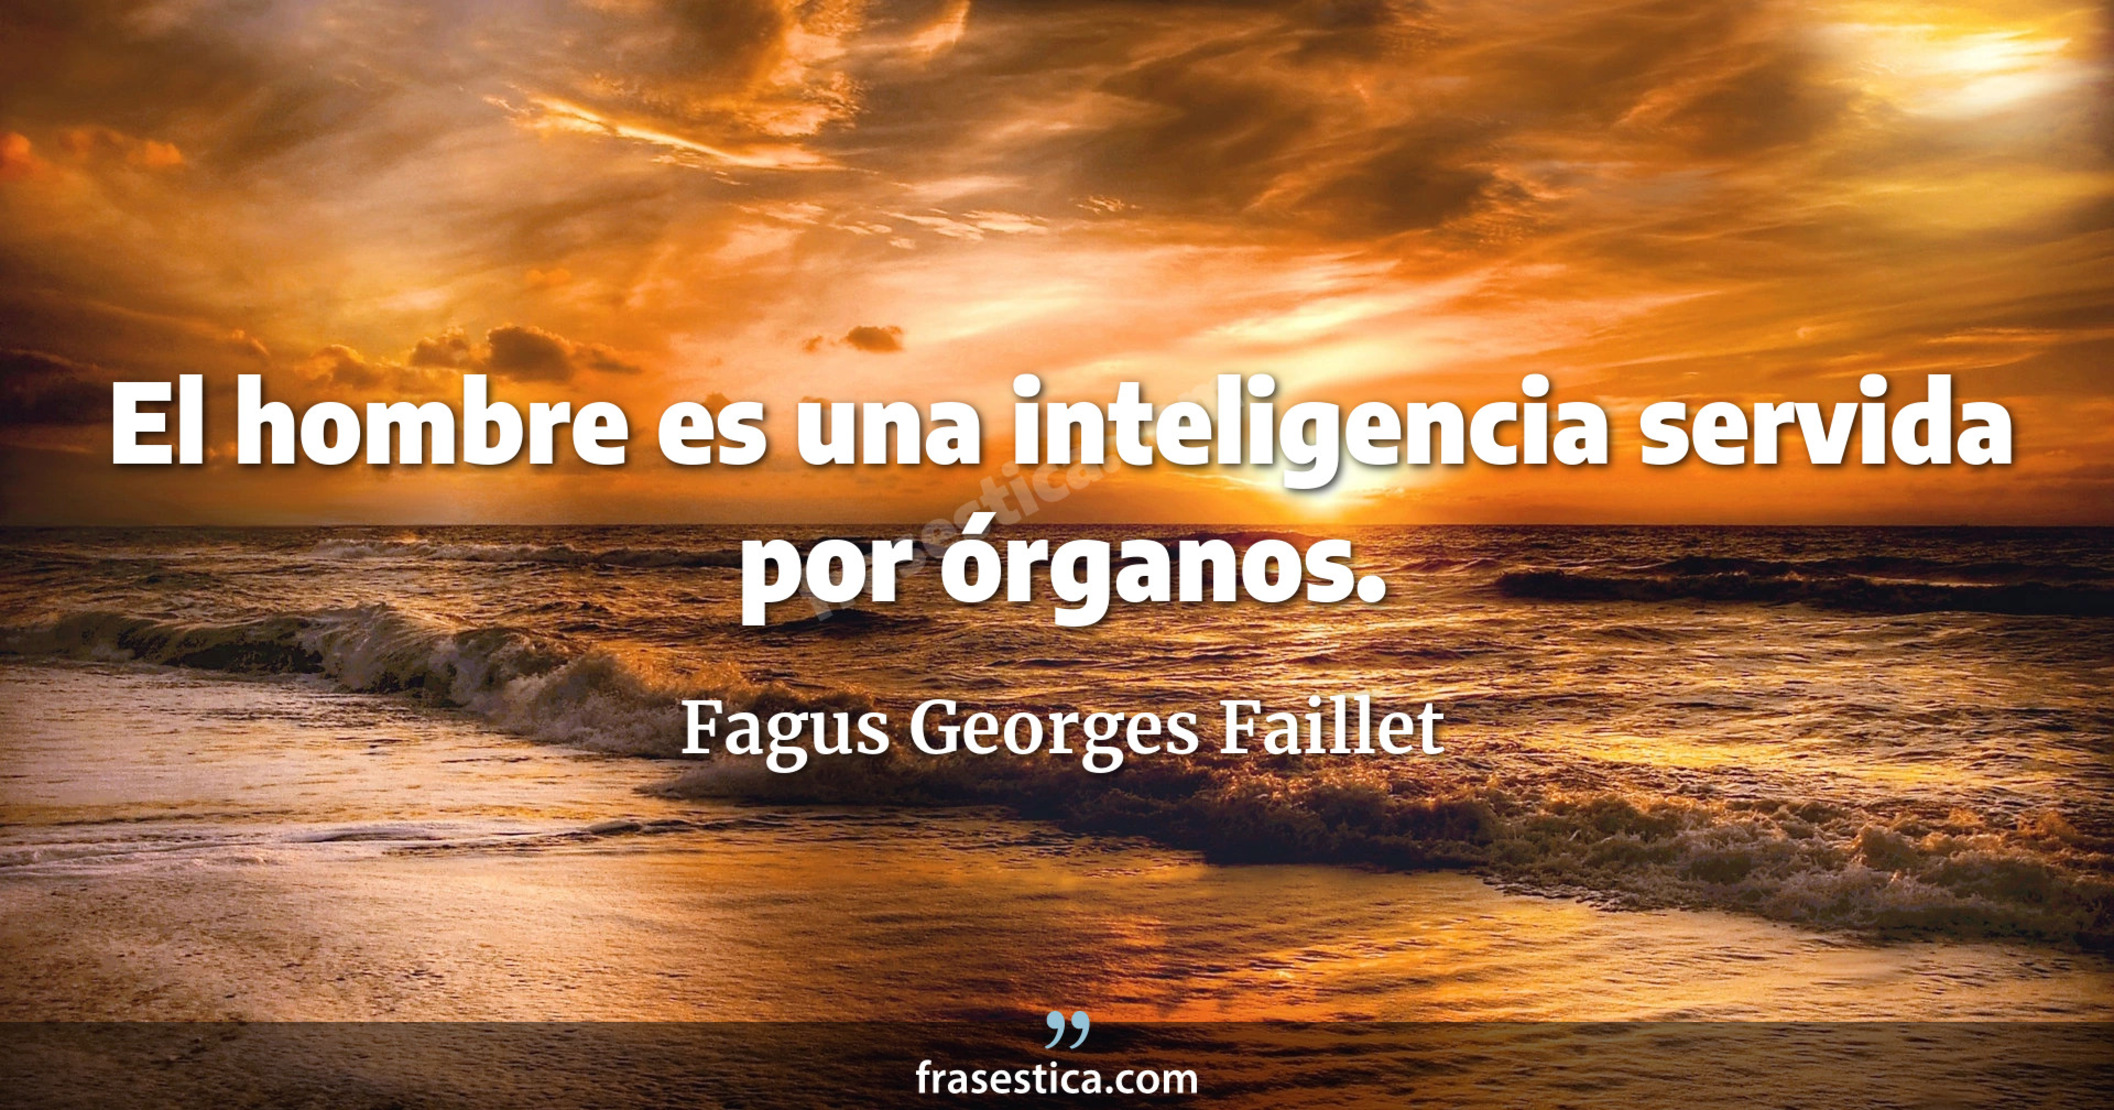 El hombre es una inteligencia servida por órganos. - Fagus Georges Faillet